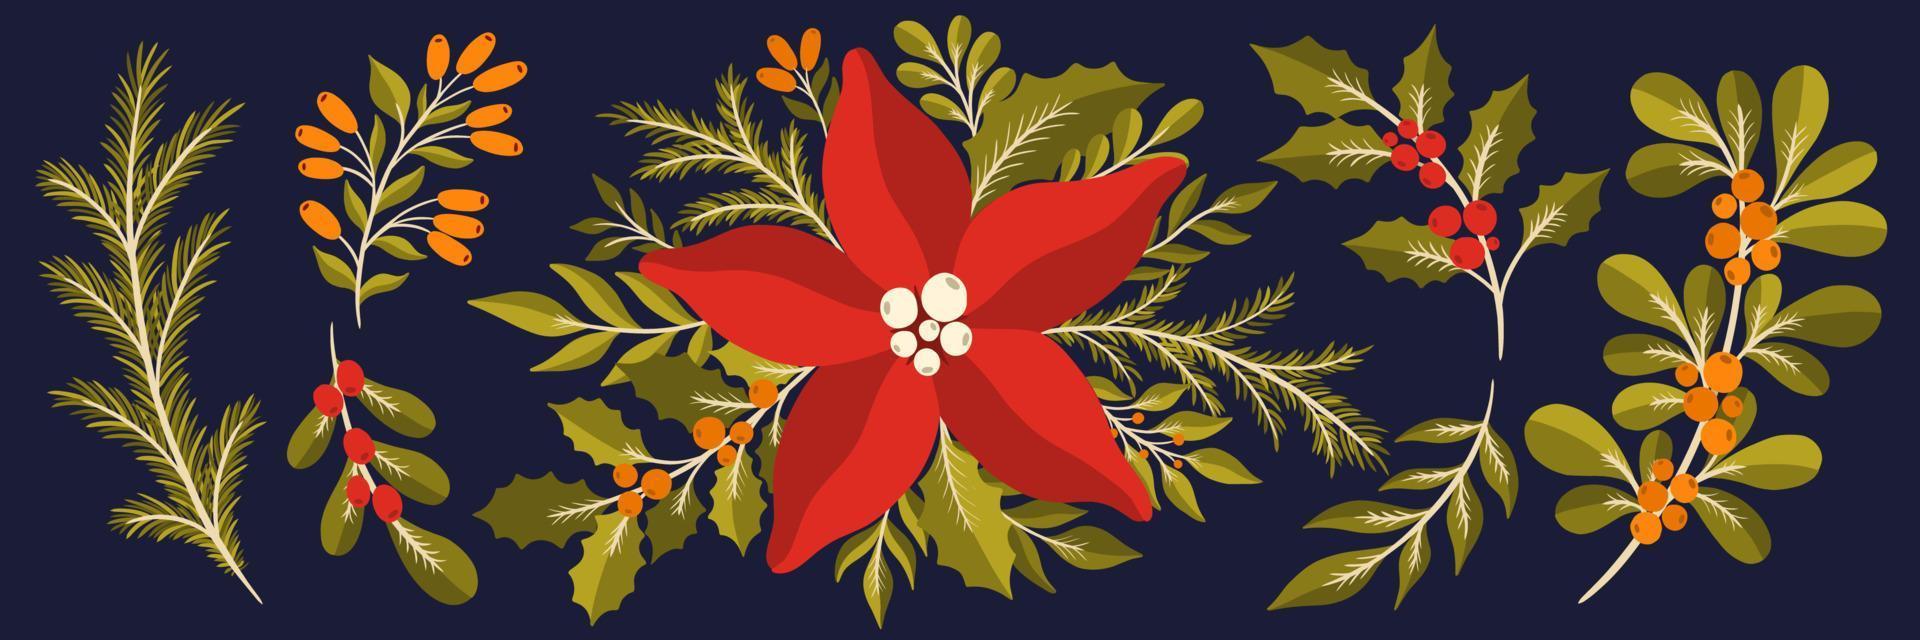 Weihnachtsblumenpflanze Set.Neujahr 2021 Kollektion Zweig leaf.decoration botanisches Design. vektor